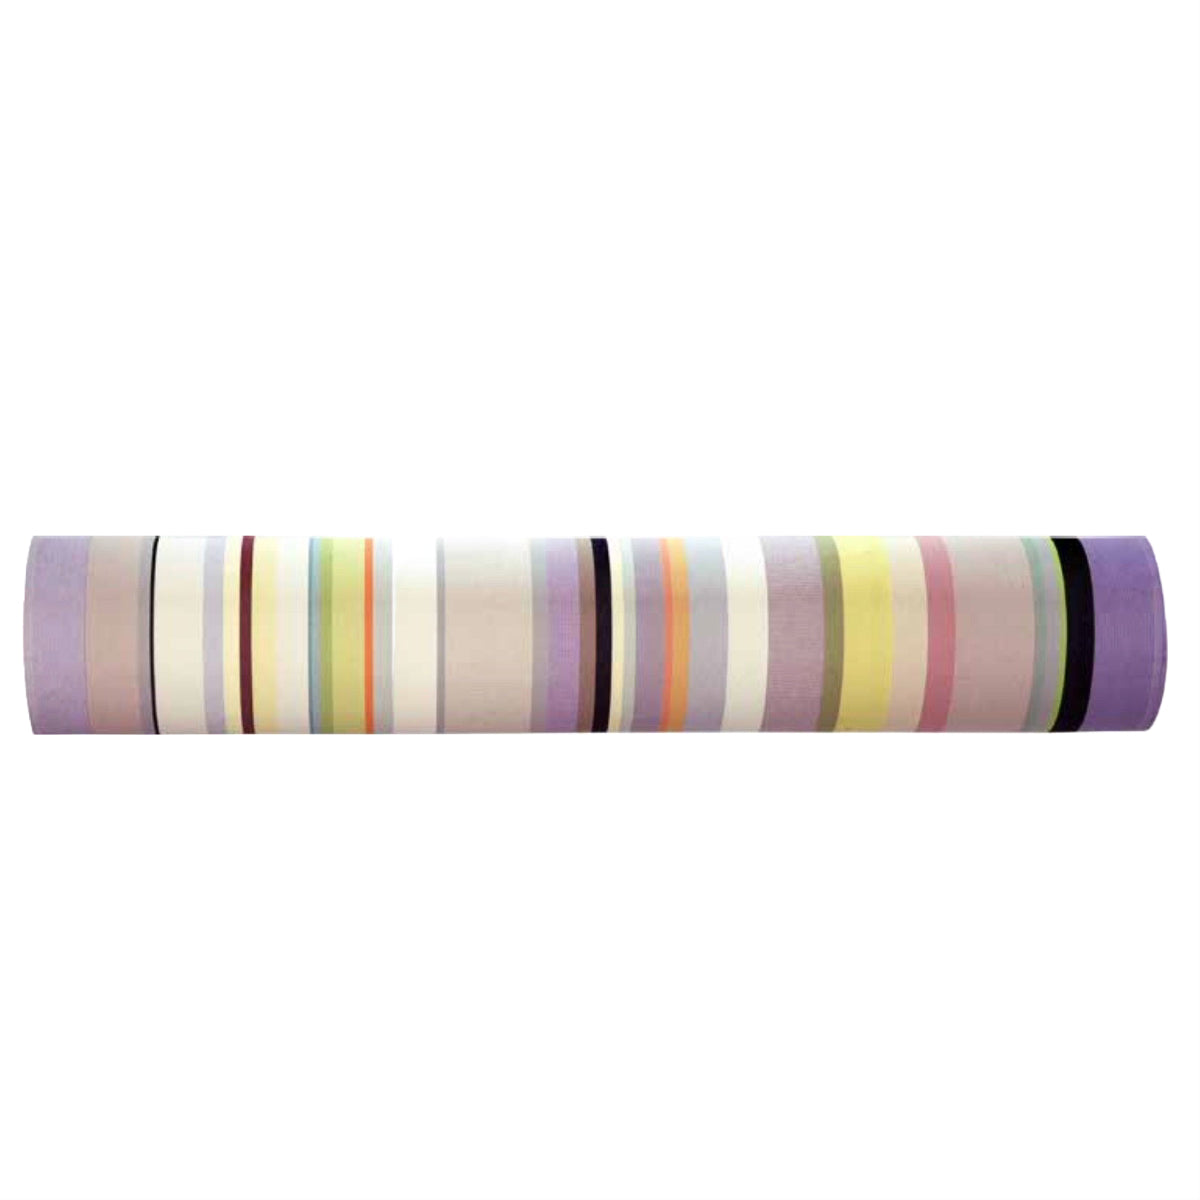 Markise stof med striber Lavendel, Gul, Grøn & Grå - 180 cm bred I Gronlykke.com